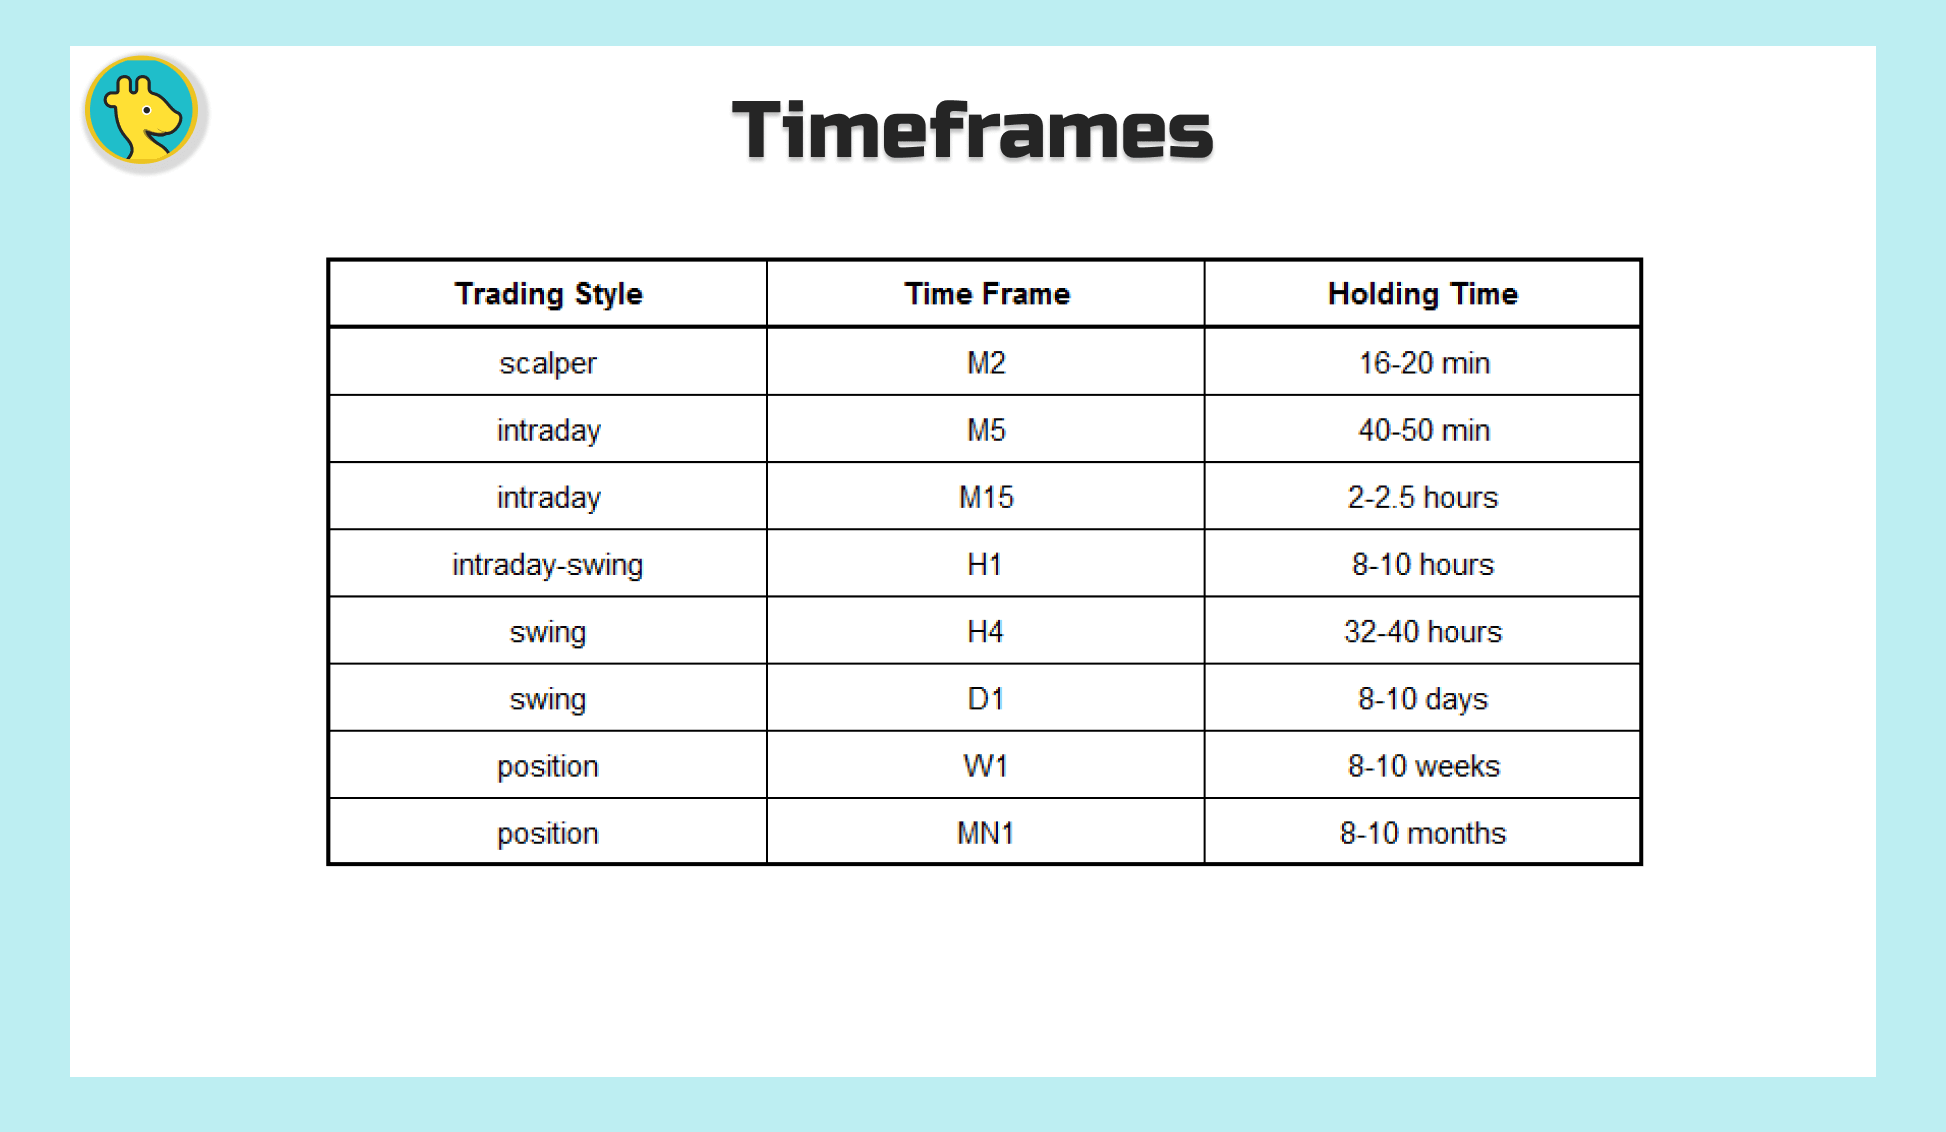 Timeframes